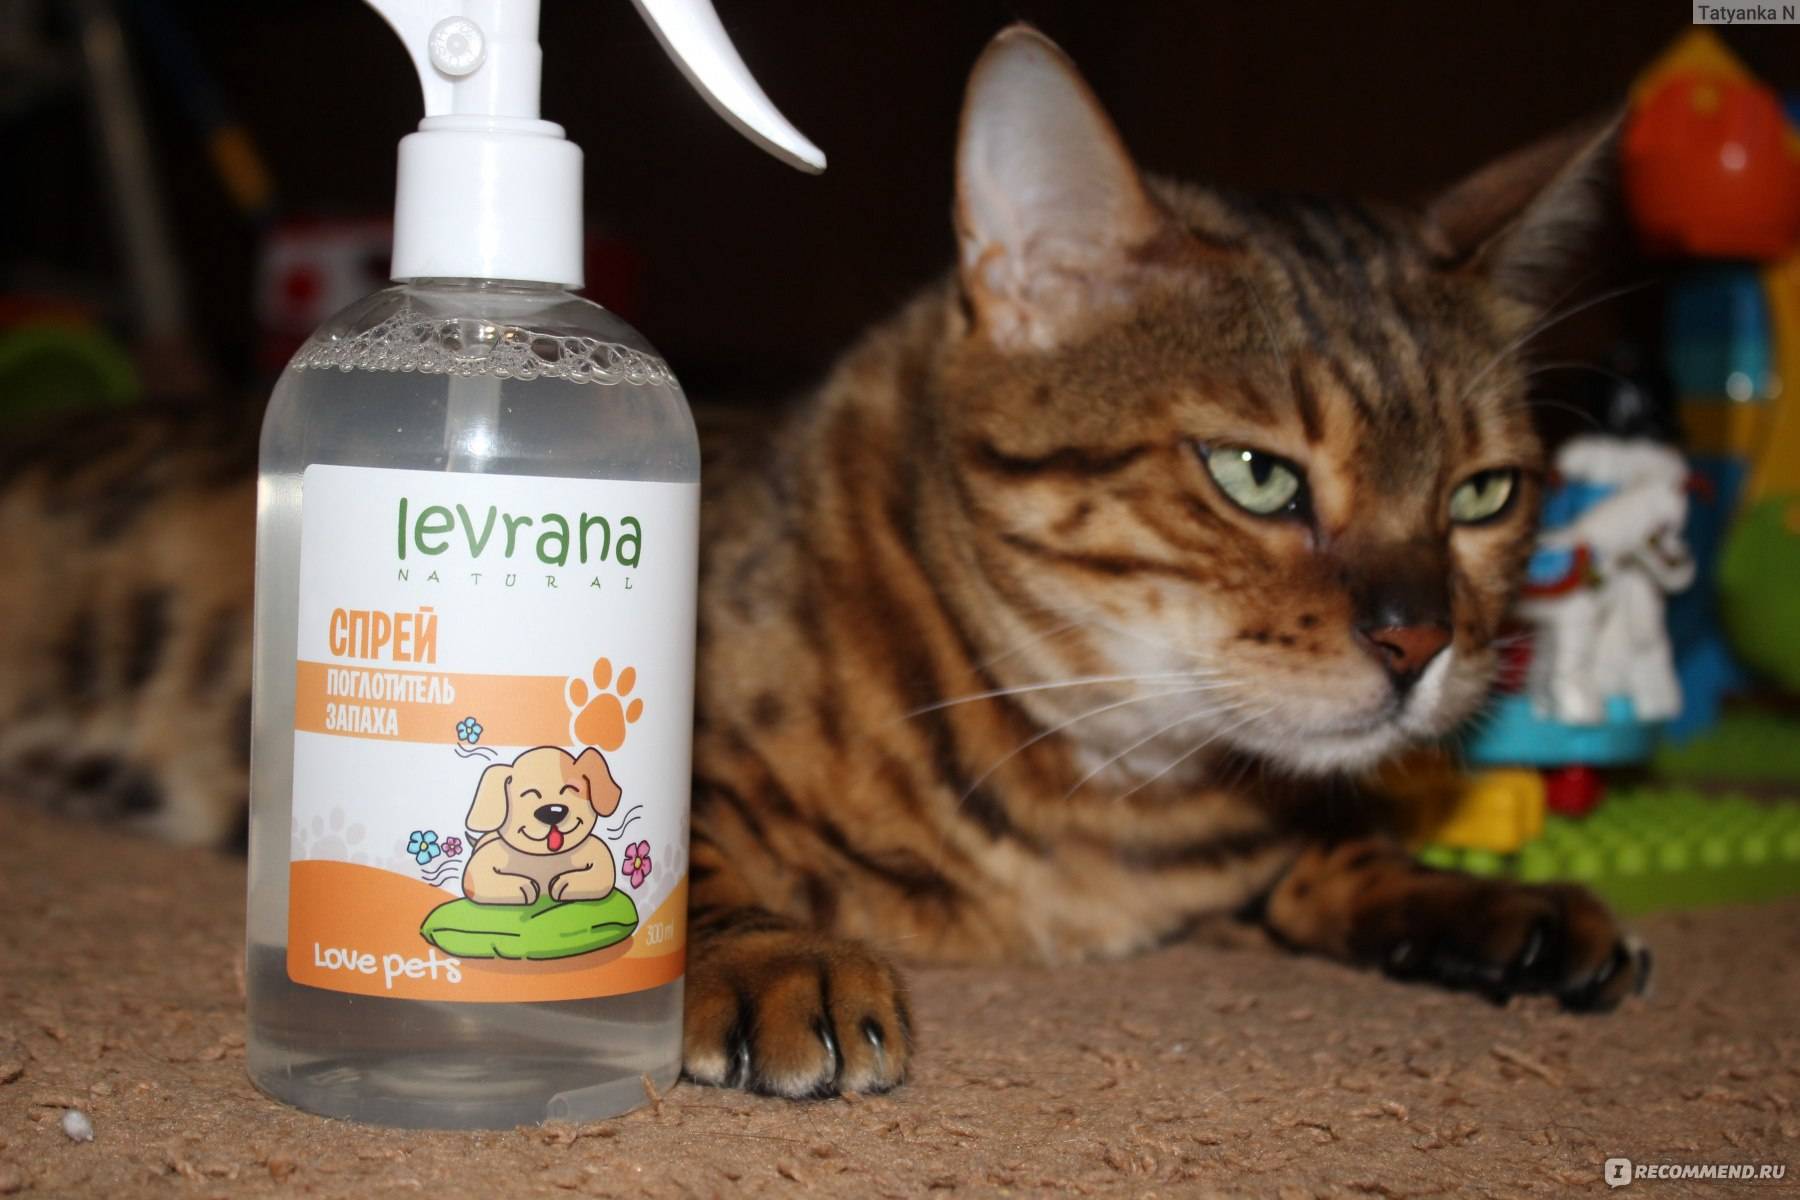 Как убрать запах кошачьей мочи: 10 проверенных способов